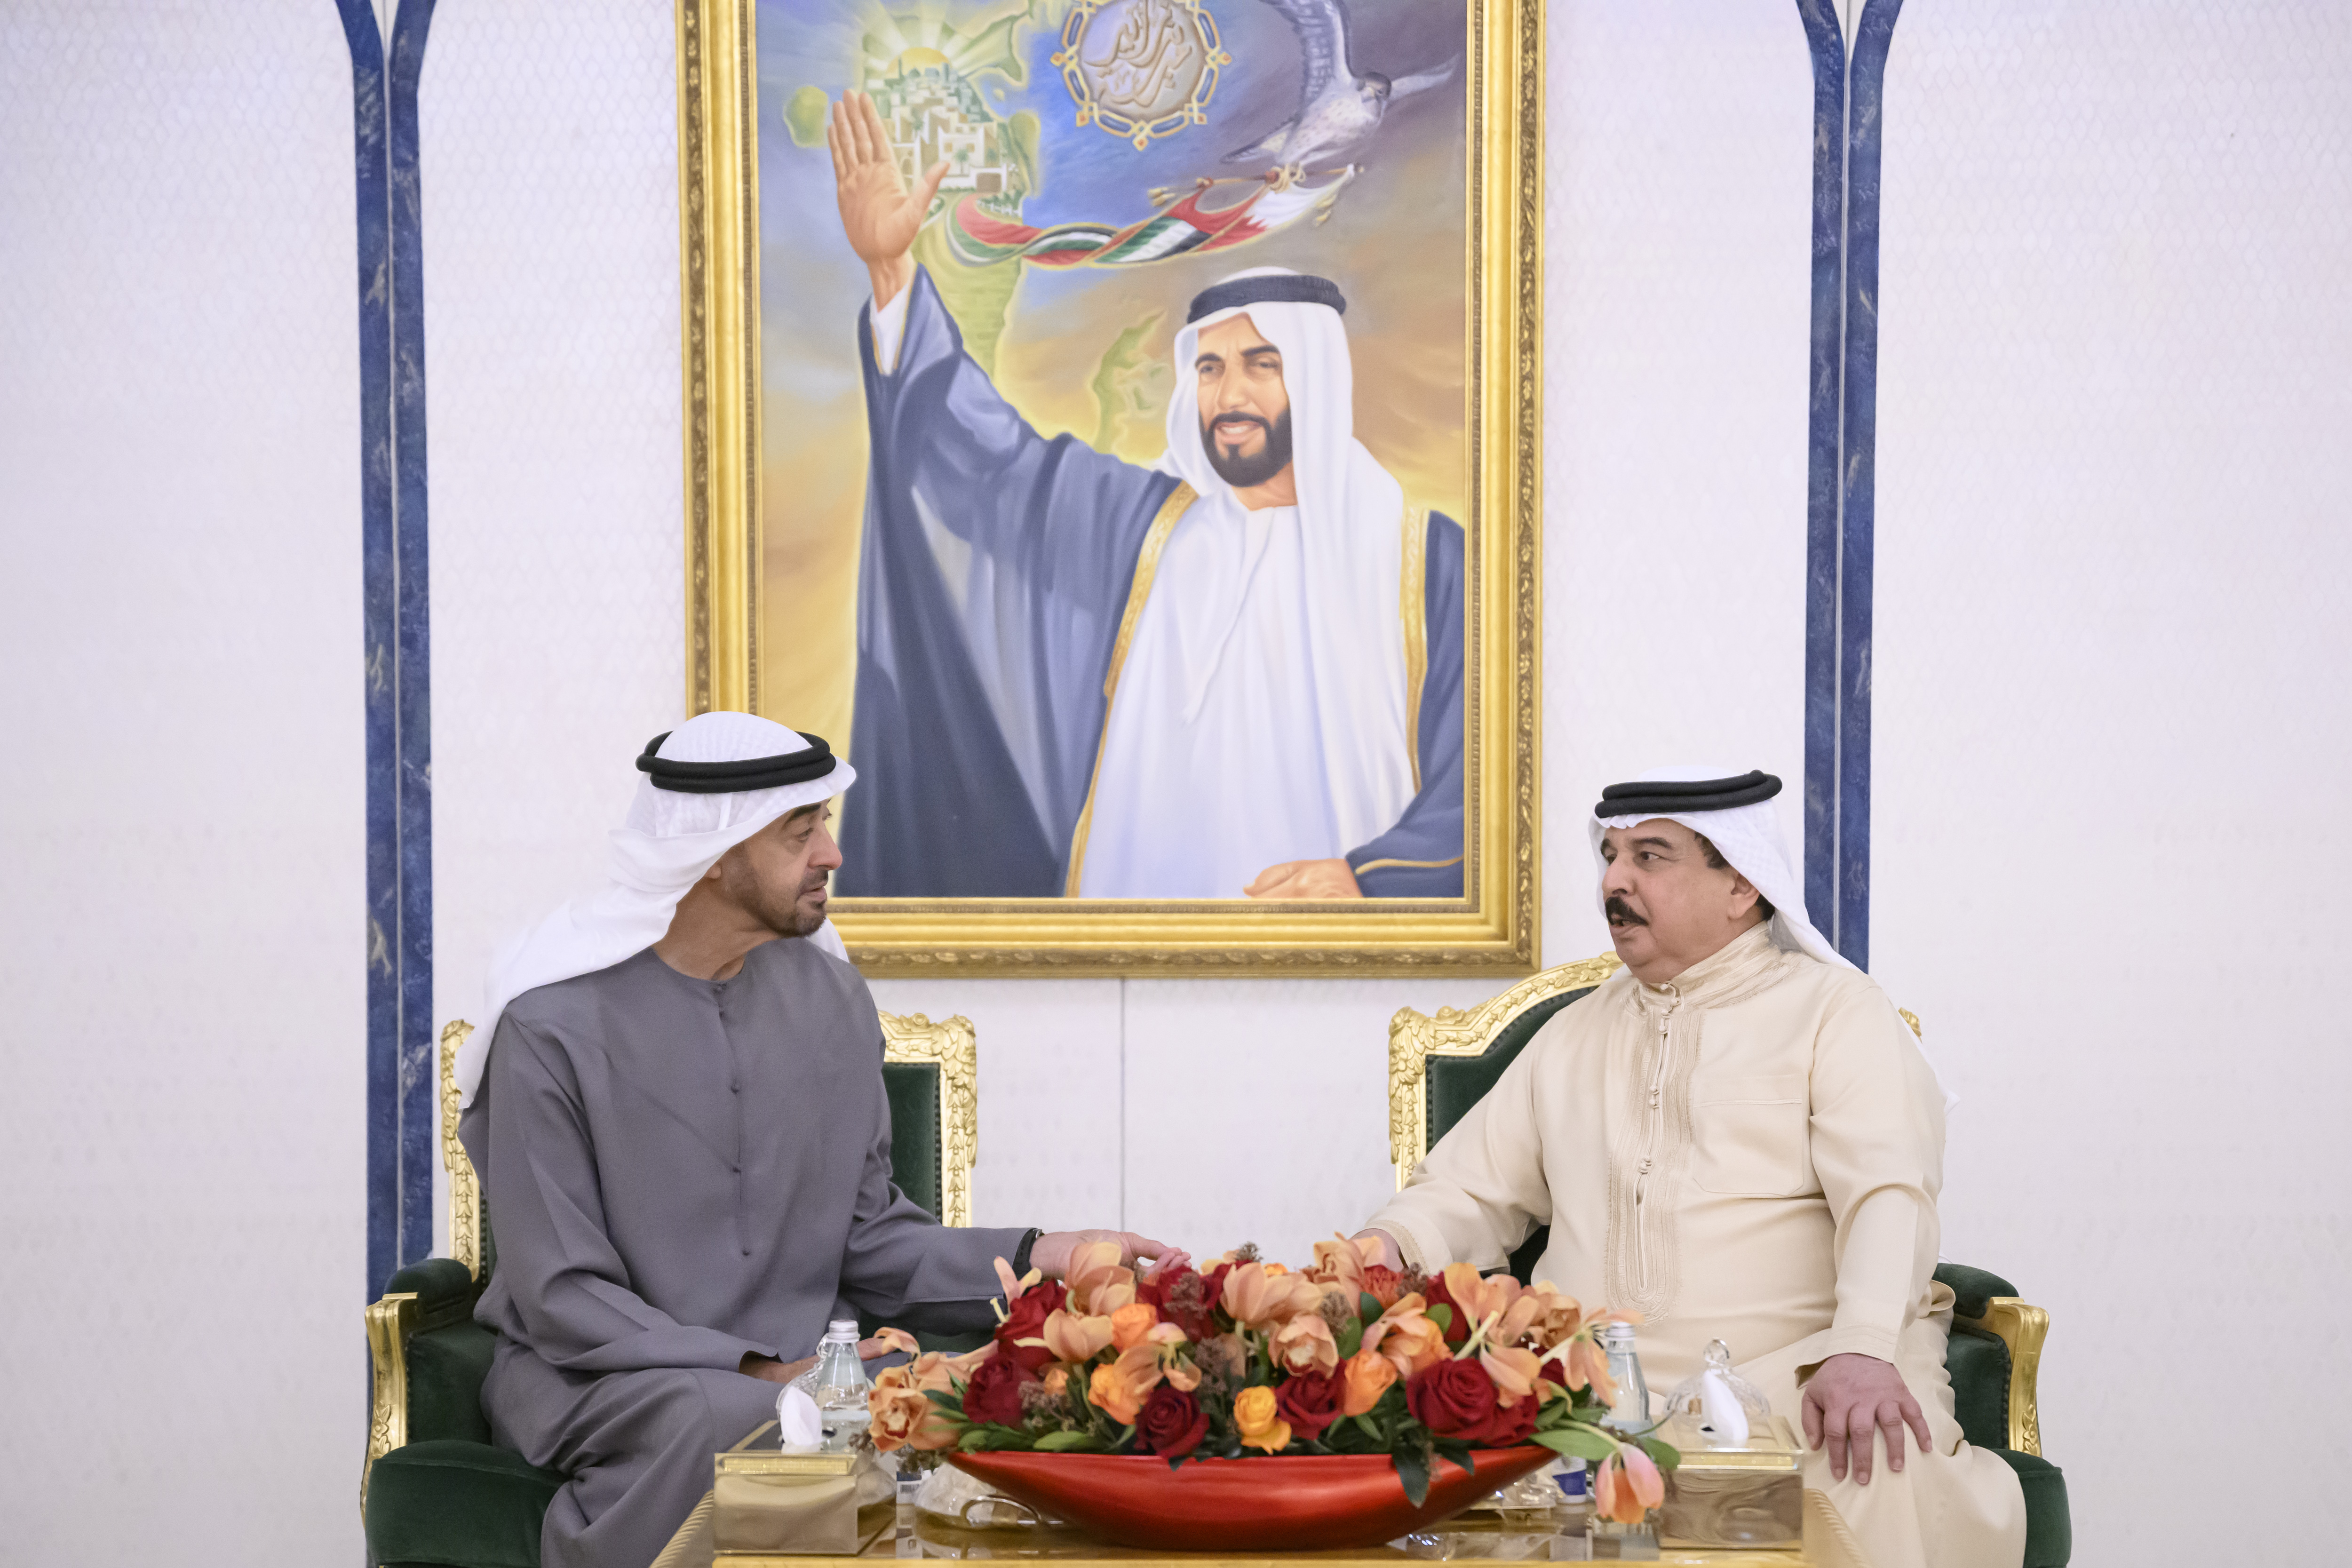 رئيس الدولة يلتقي ملك البحرين و يبحثان العلاقات الأخوية و المستجدات على الساحتين الإقليمية و الدولية.